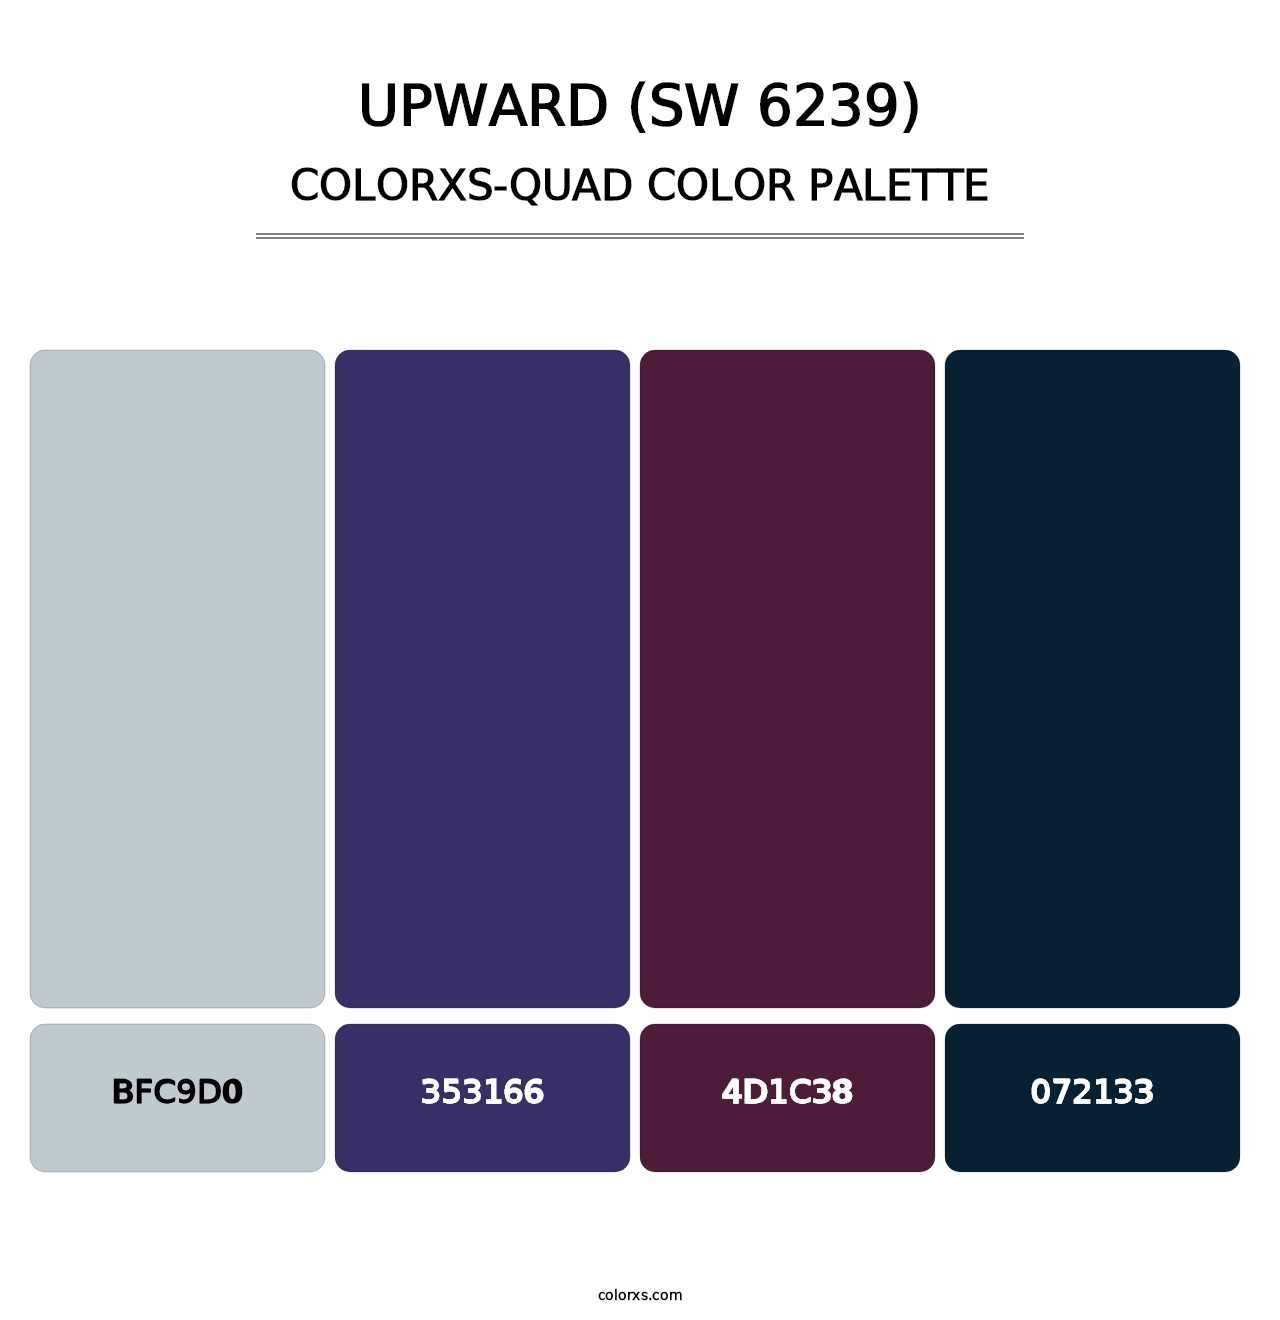 Upward (SW 6239) - Colorxs Quad Palette